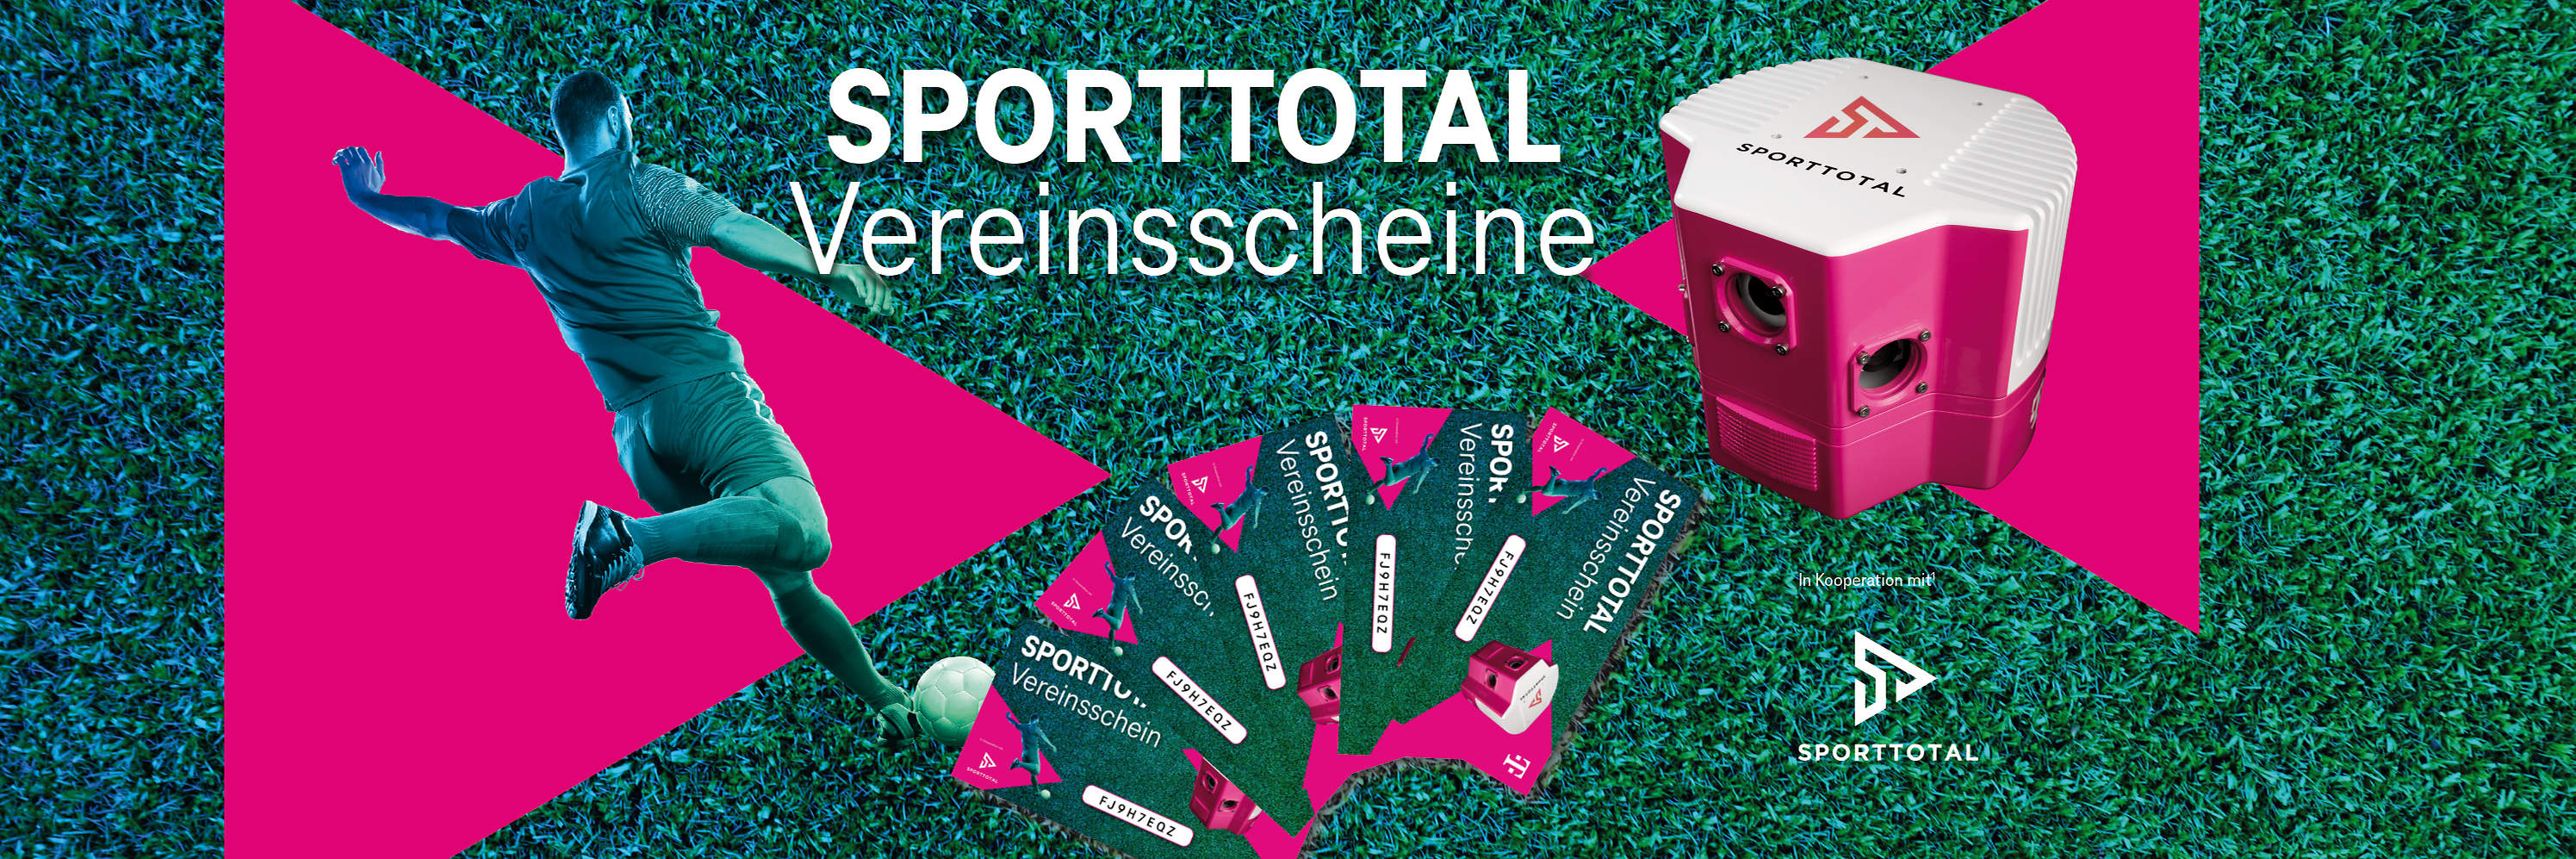 Sporttotal Vereinsscheine Telekom Geschäftskunden